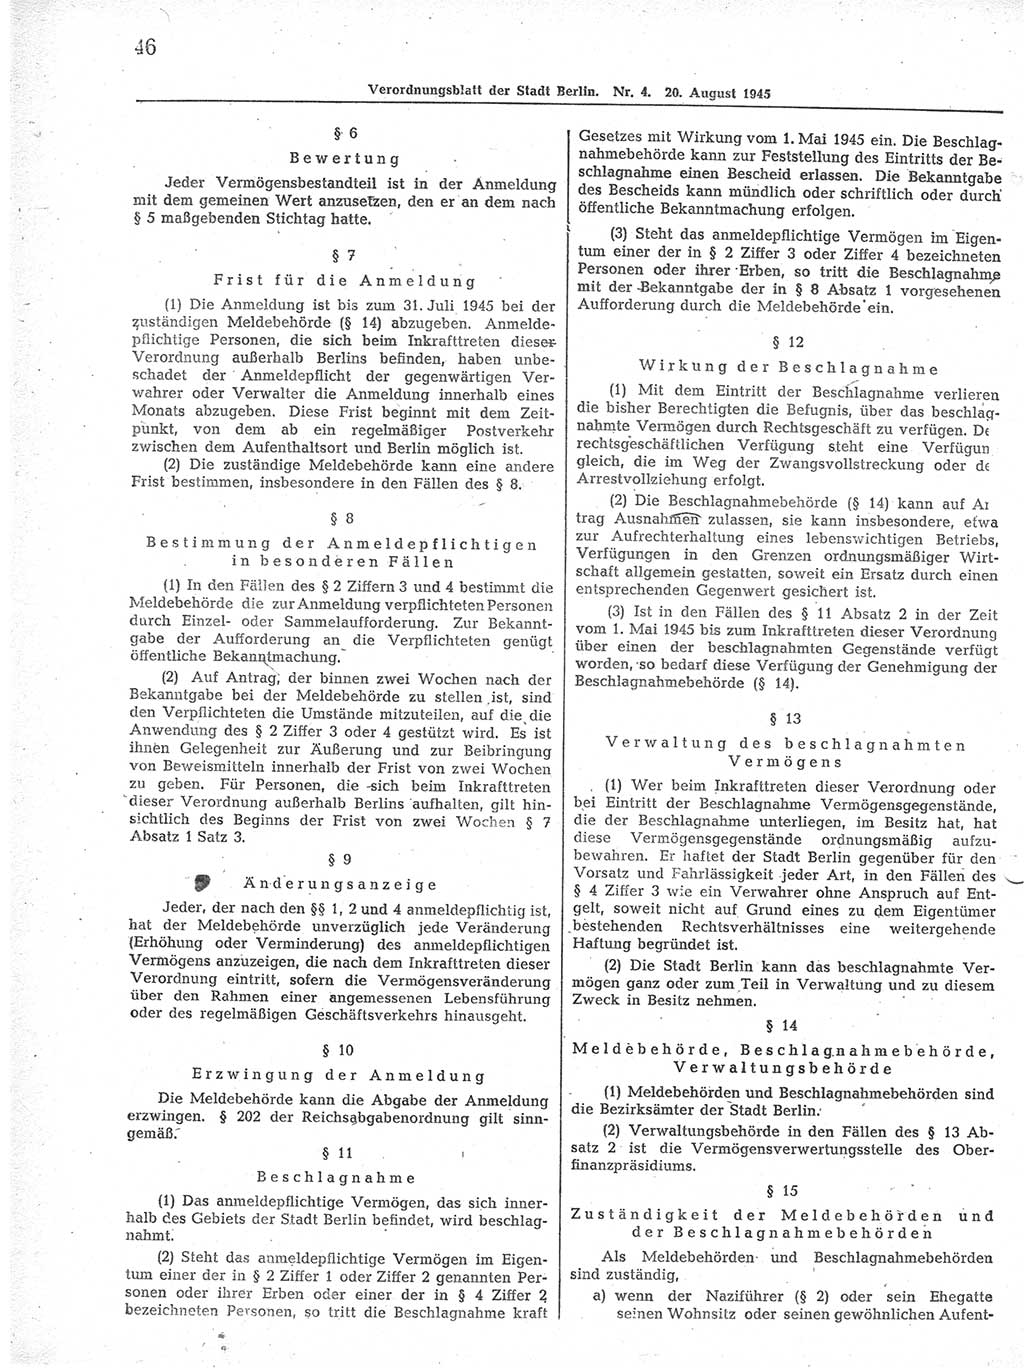 Verordnungsblatt (VOBl.) der Stadt Berlin 1945, Seite 46 (VOBl. Bln. 1945, S. 46)